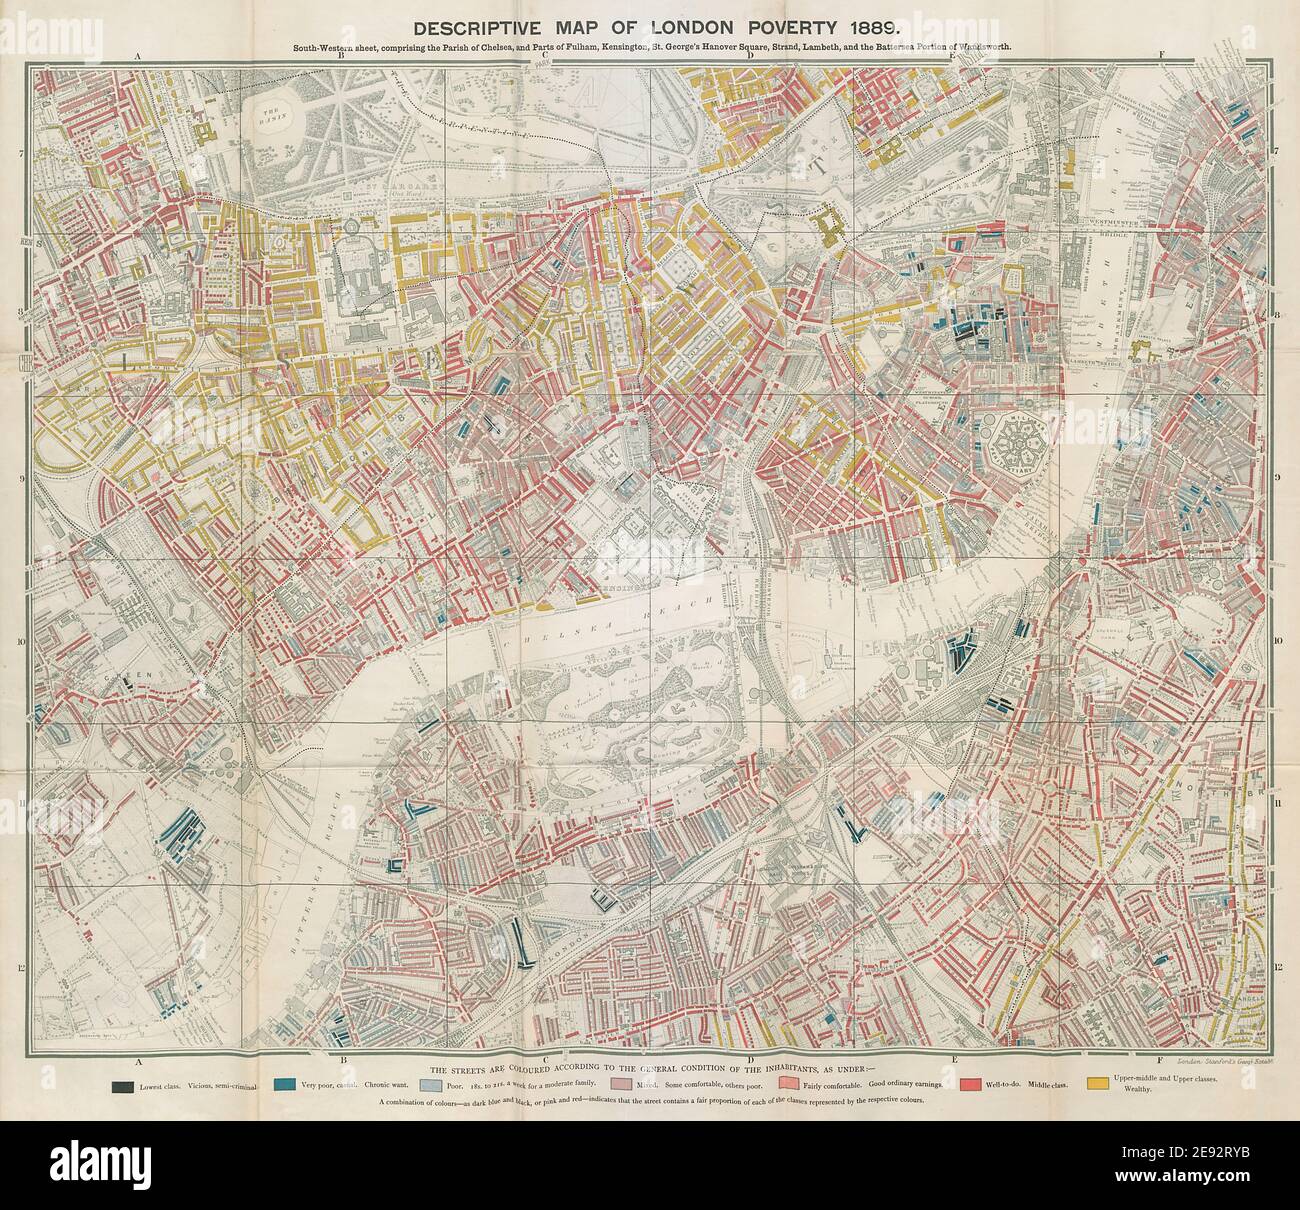 Carte descriptive de la pauvreté de Londres. STAND. SW - Kensington Chelsea Battersea 1889 Banque D'Images